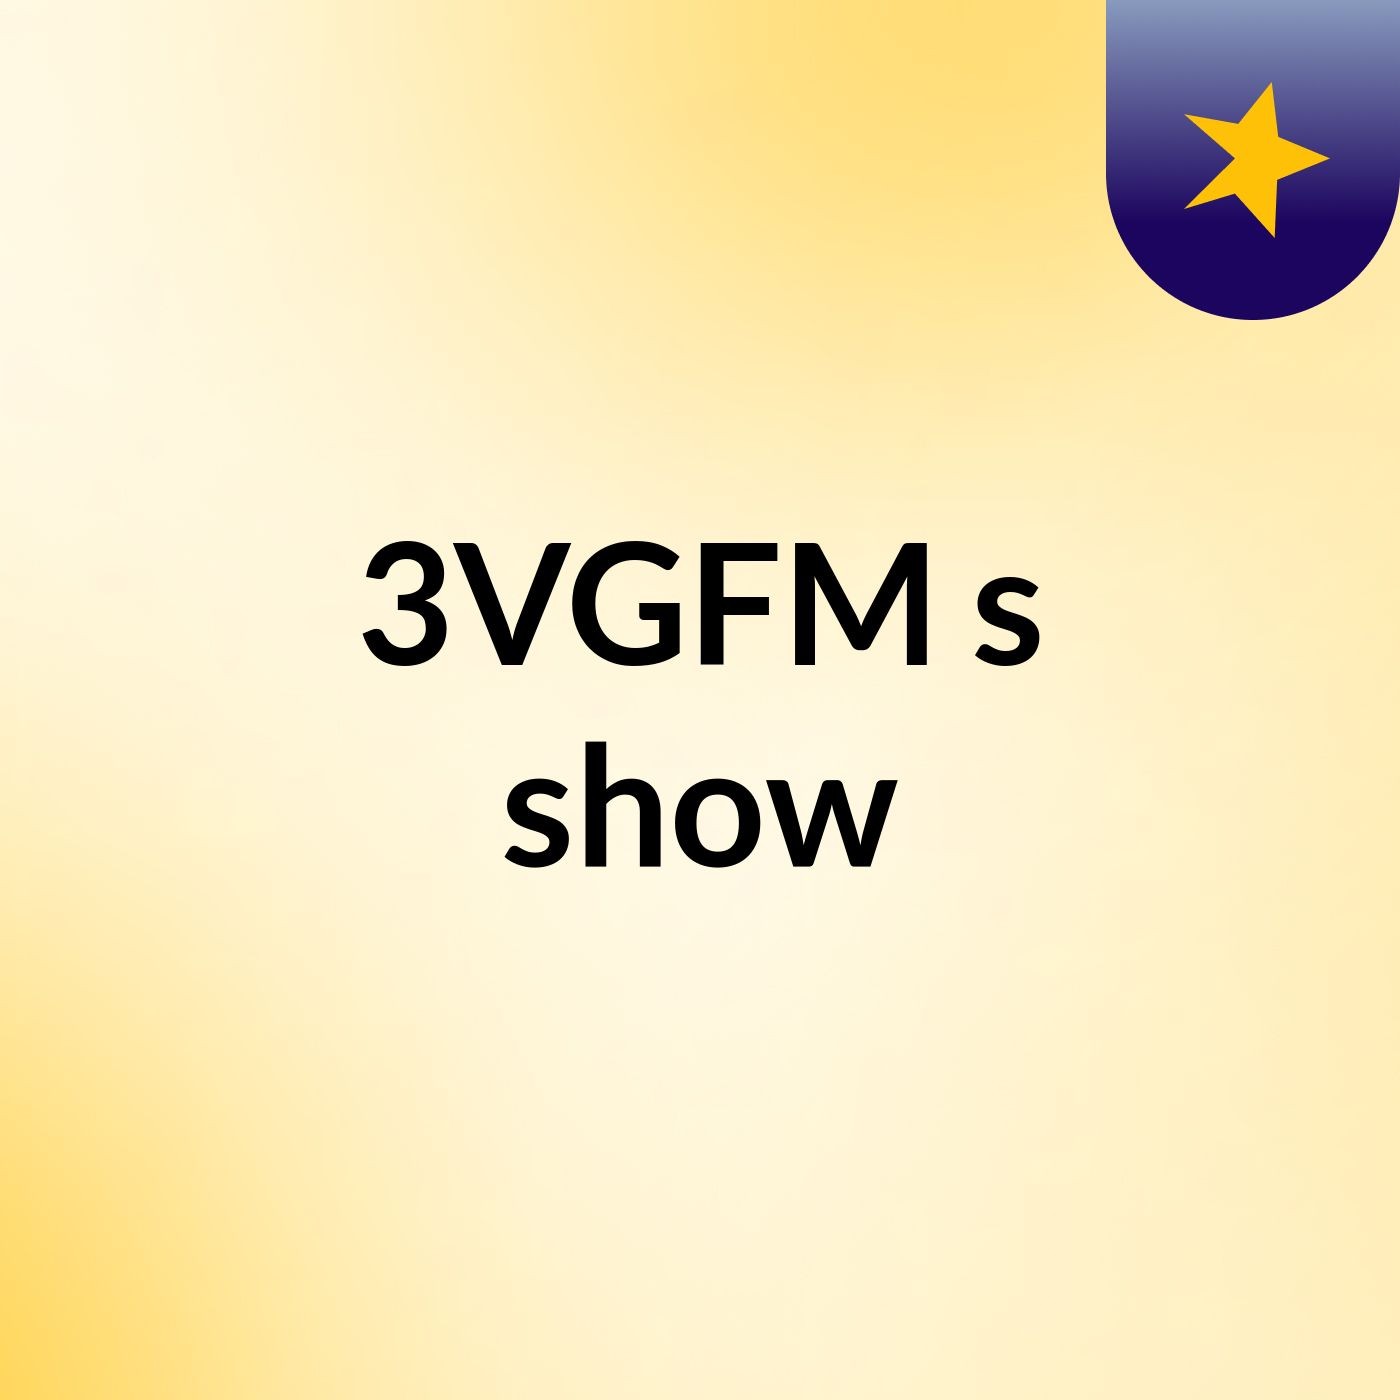 3VGFM's show